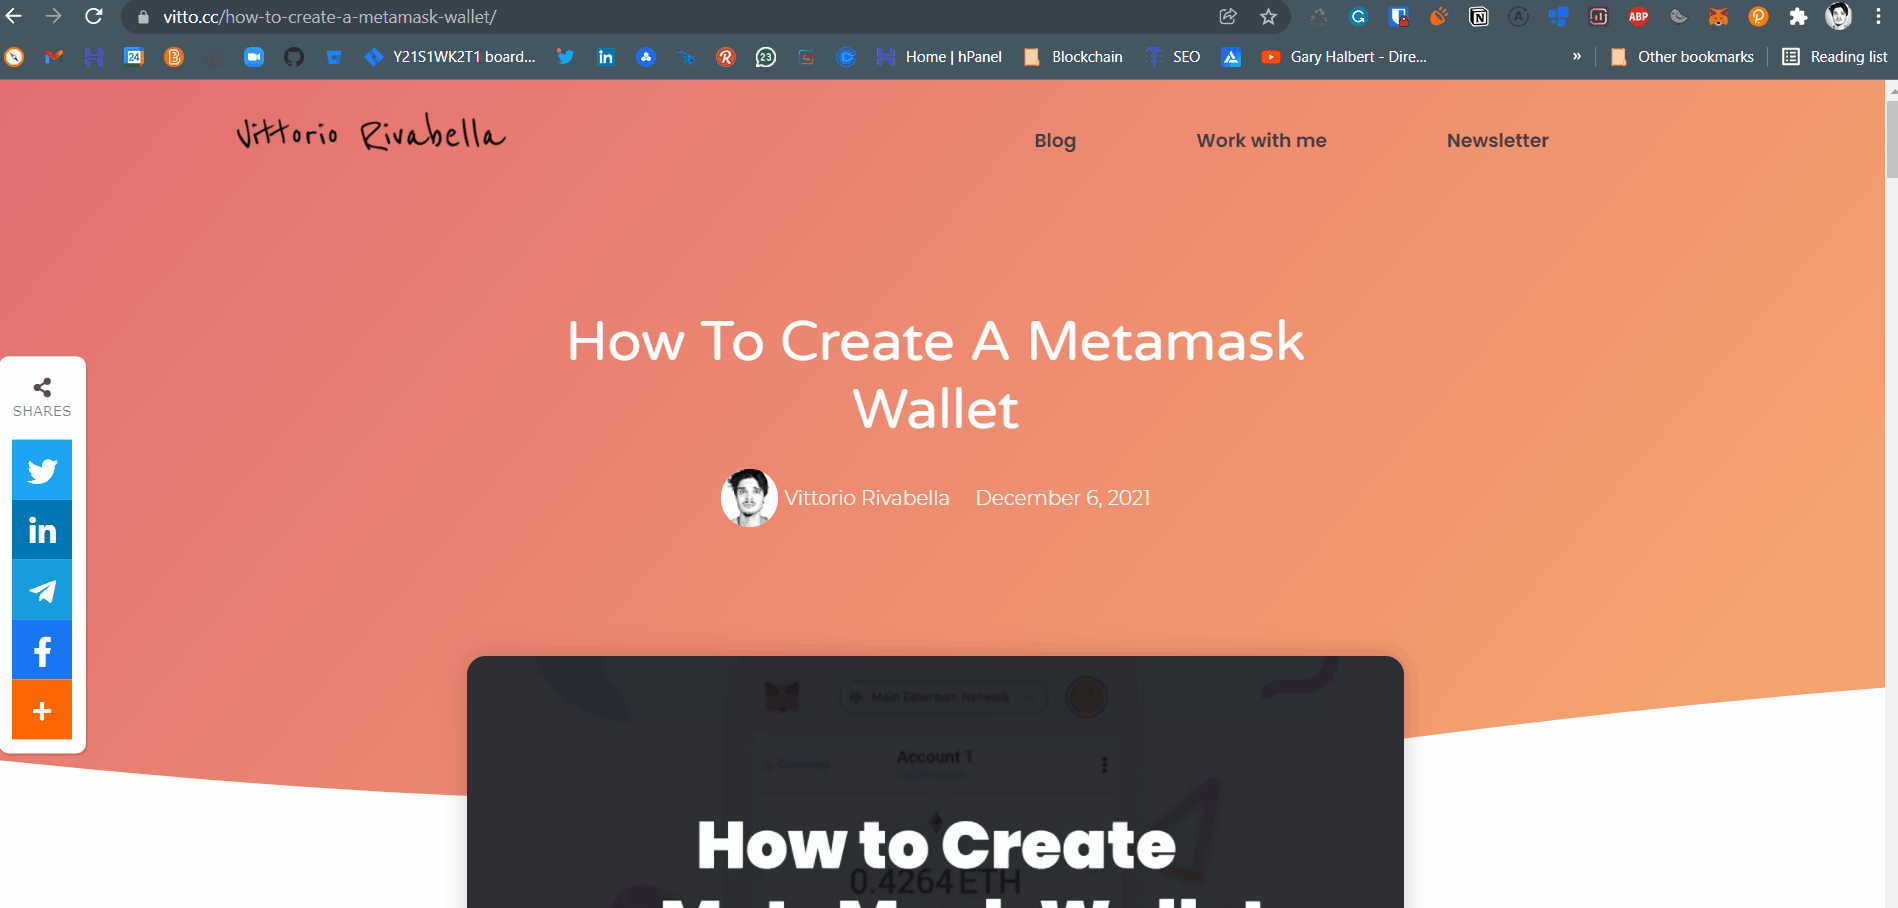 Afferrare la chiave privata del portafoglio di Metamask per distribuire il token